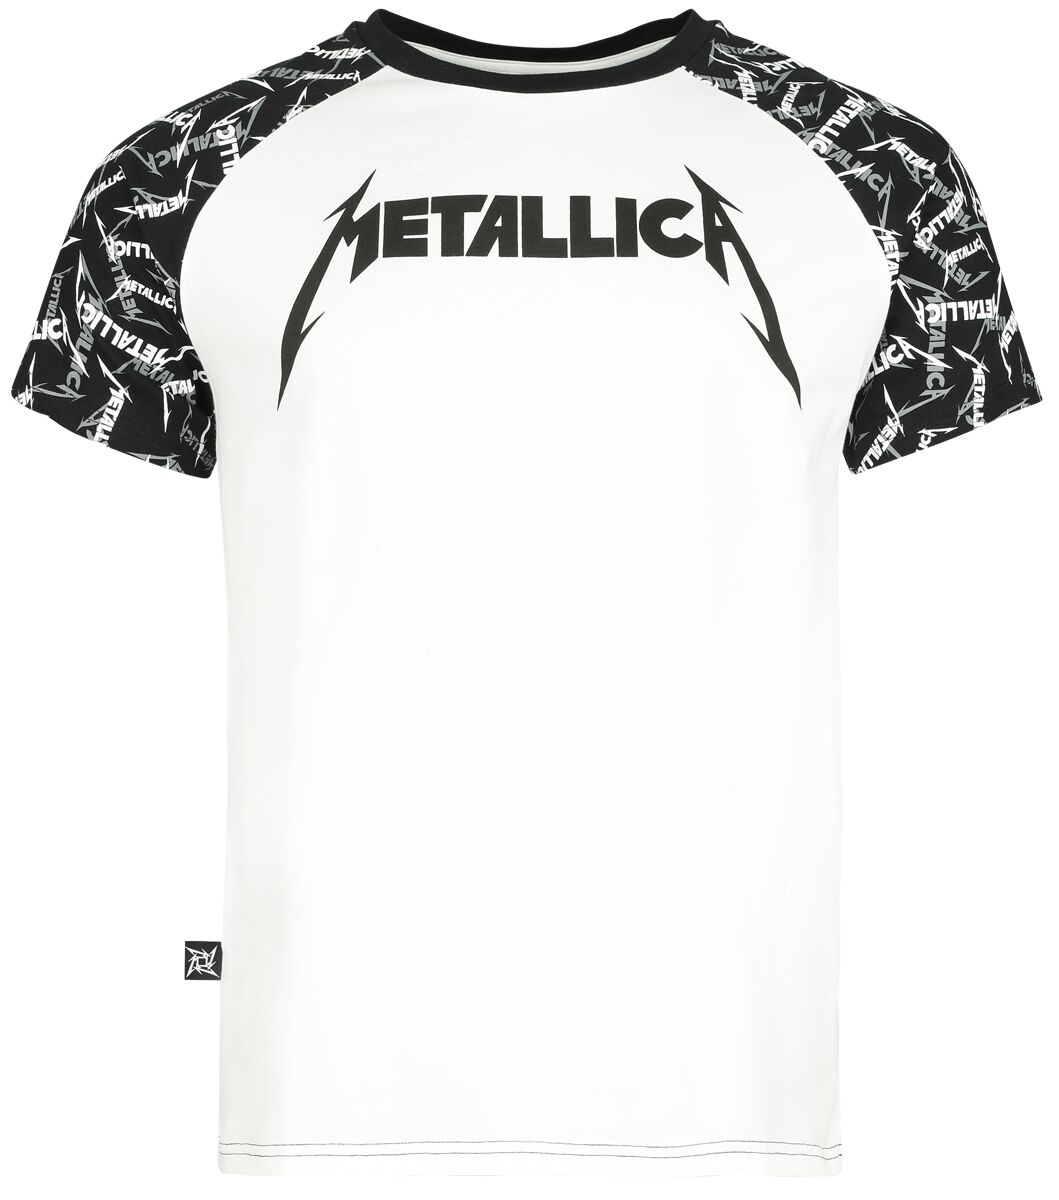 Metallica T-Shirt - EMP Signature Collection - S bis 5XL - für Männer - Größe S - weiß/schwarz  - EMP exklusives Merchandise!